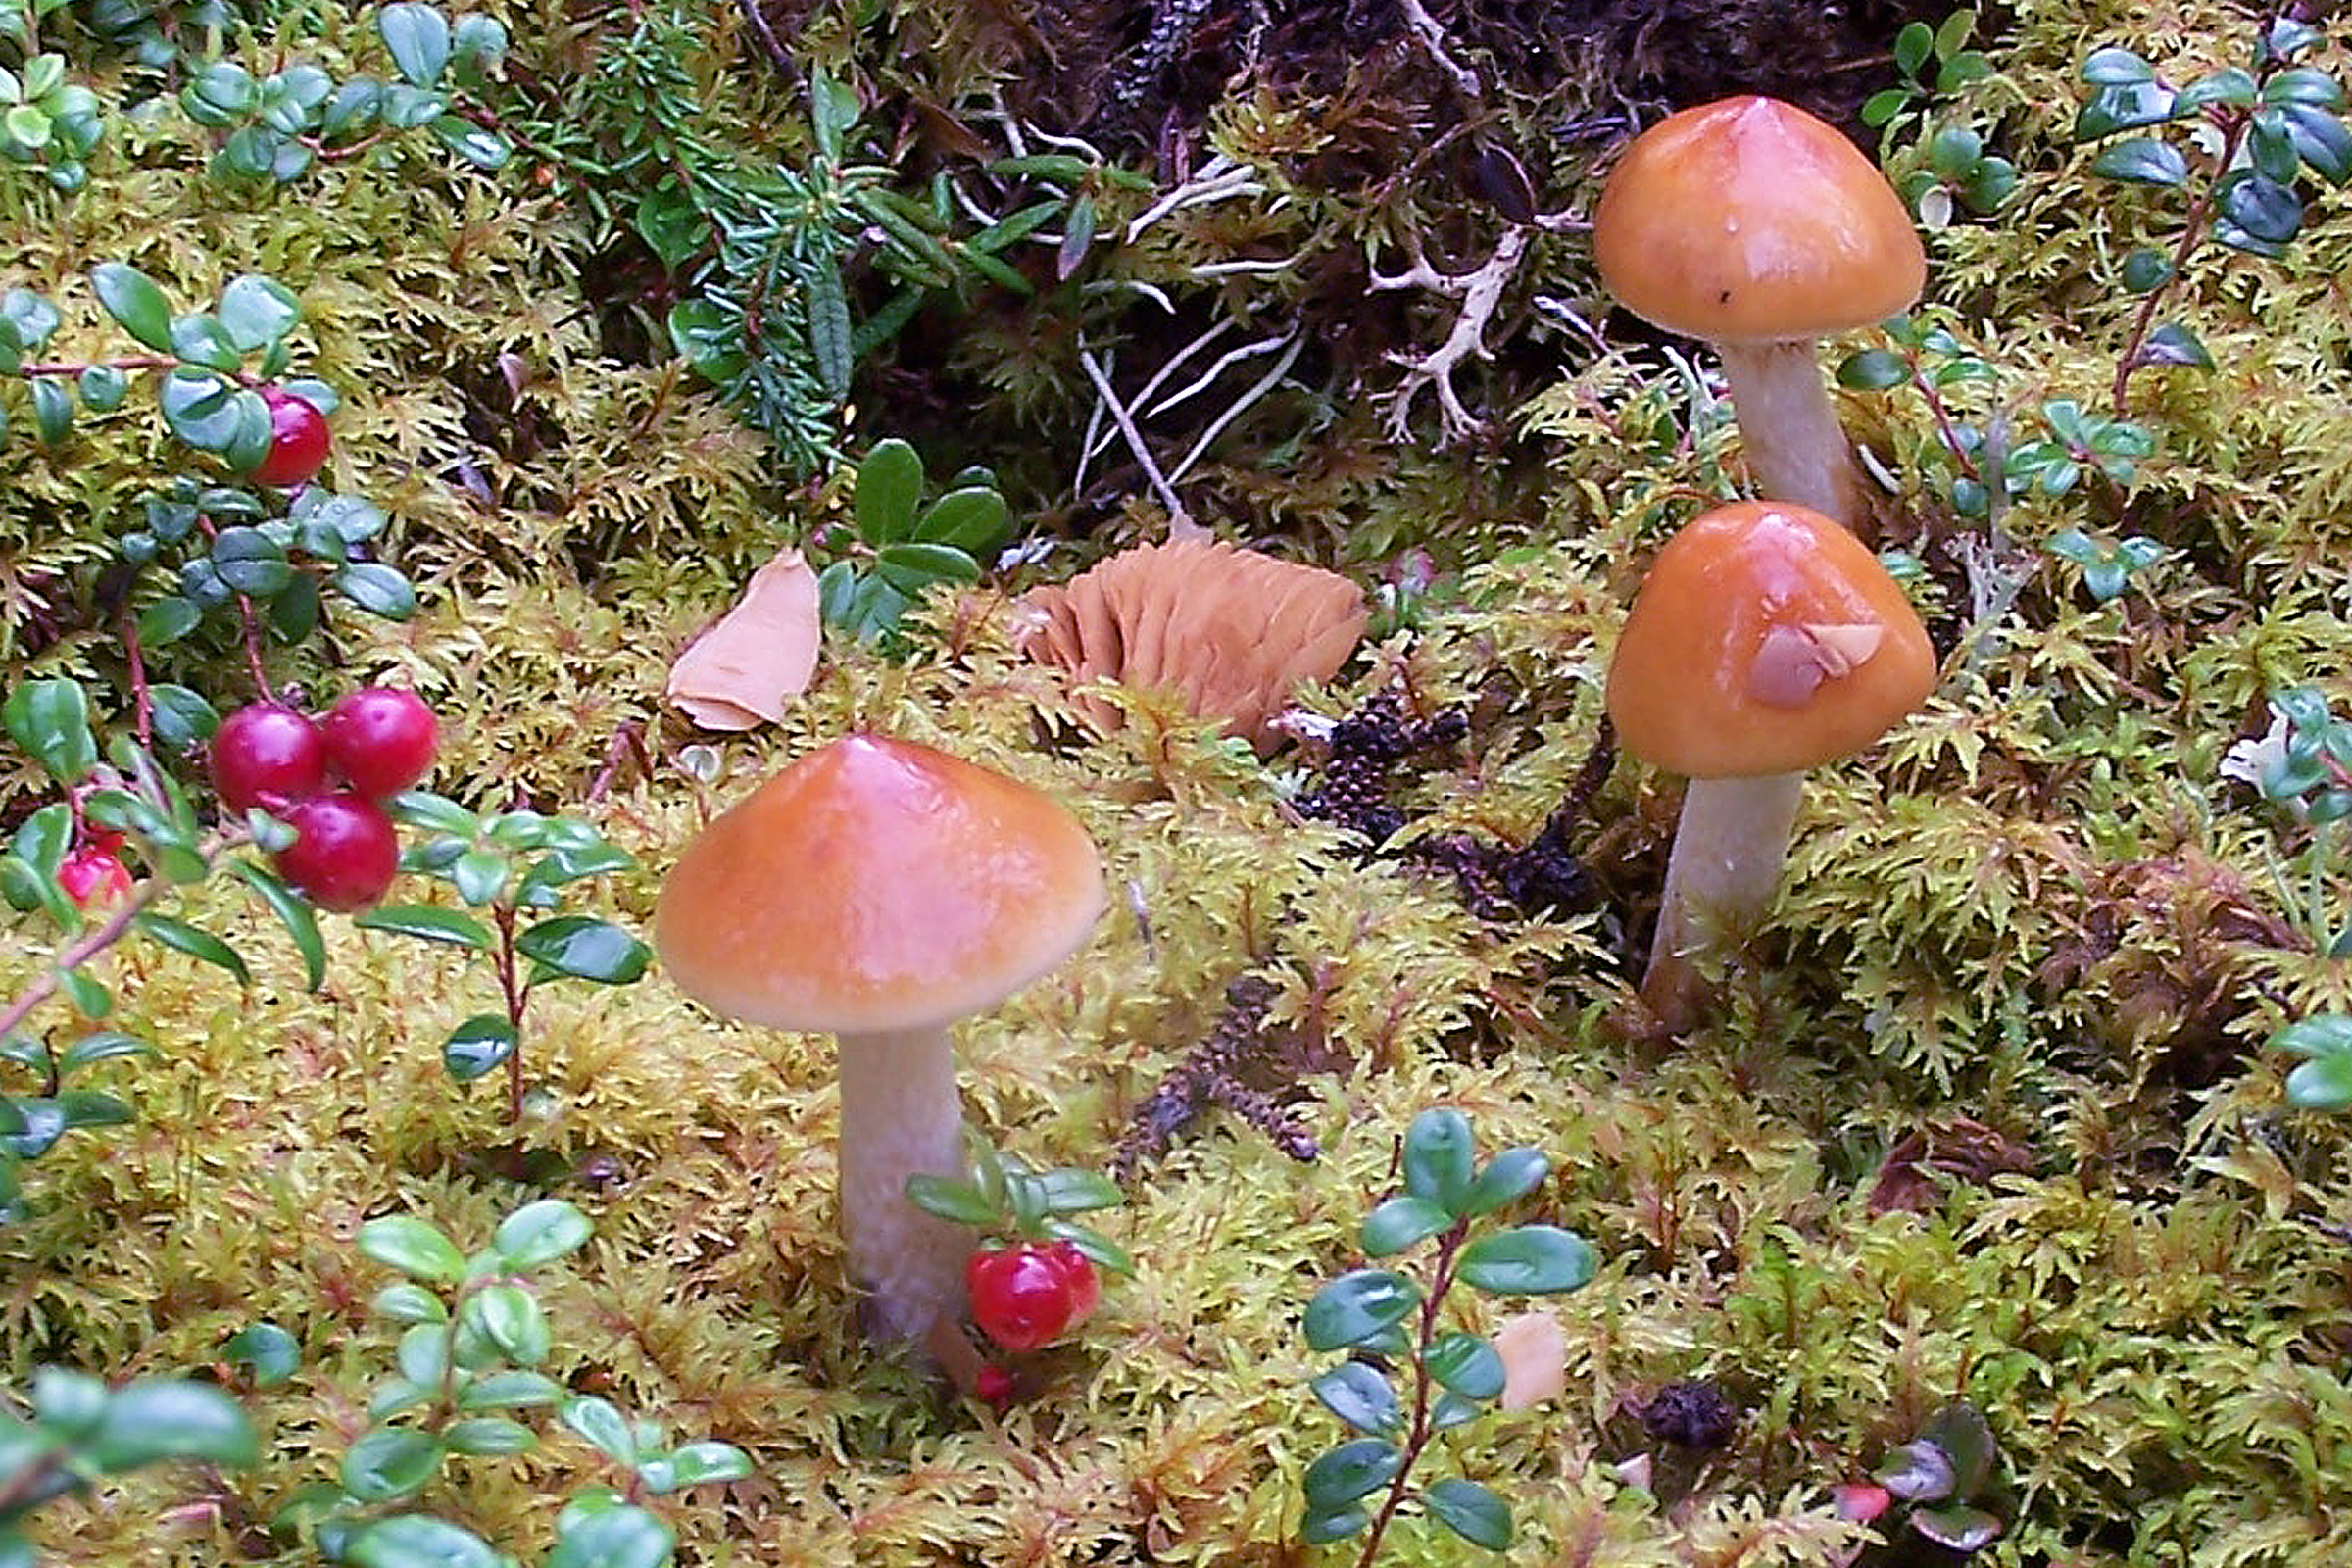 picture of mushrooms